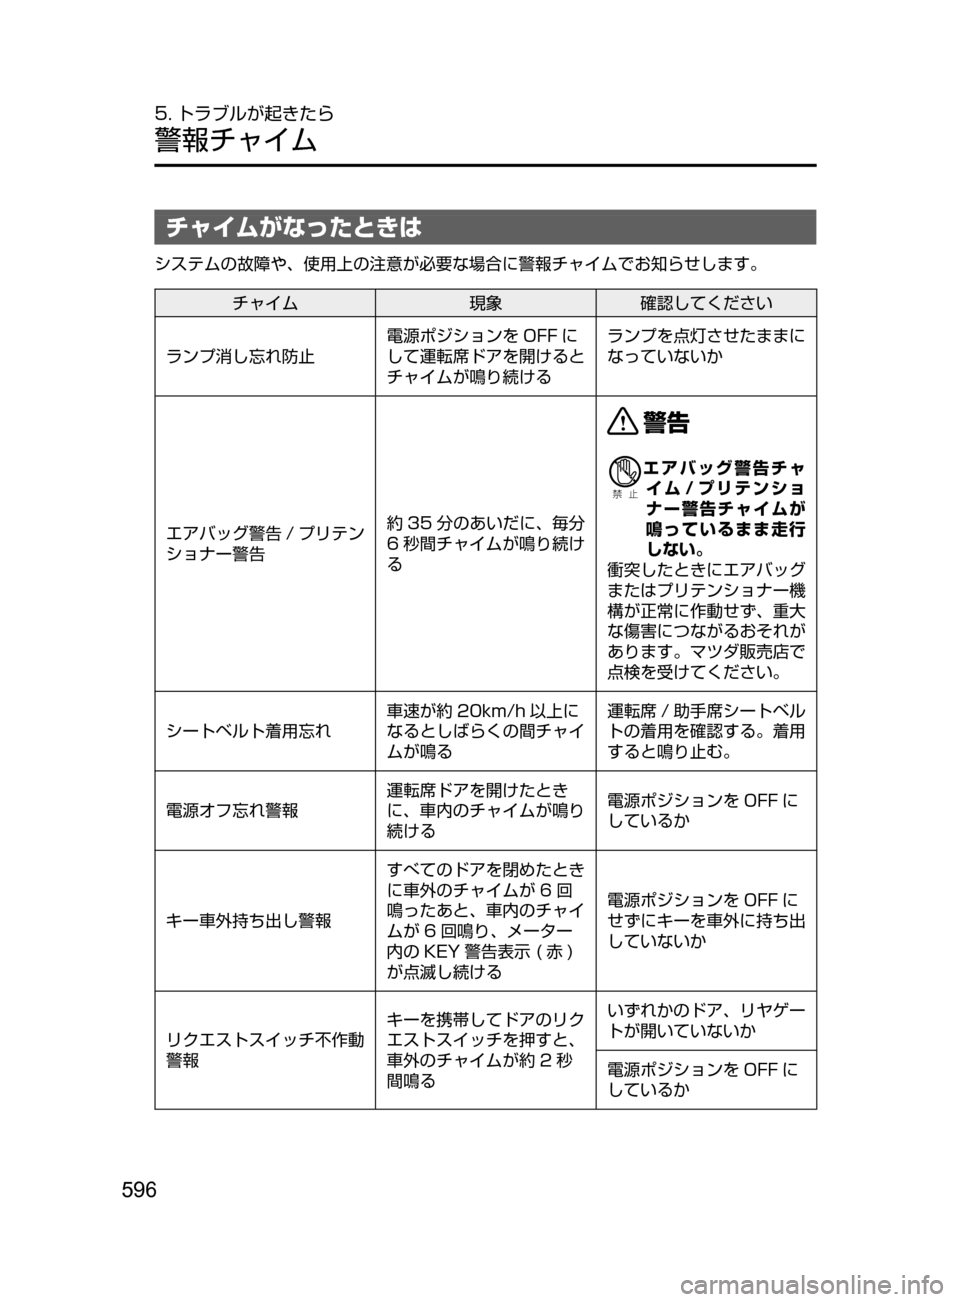 MAZDA MODEL ATENZA 2016  アテンザ｜取扱説明書 (in Japanese) 596
5. トラブルが起きたら
警報チャイム
チャイムがなったときは
システムの故障や､ 使用上の注意が必要な場合に警報チャイムでお知らせします。